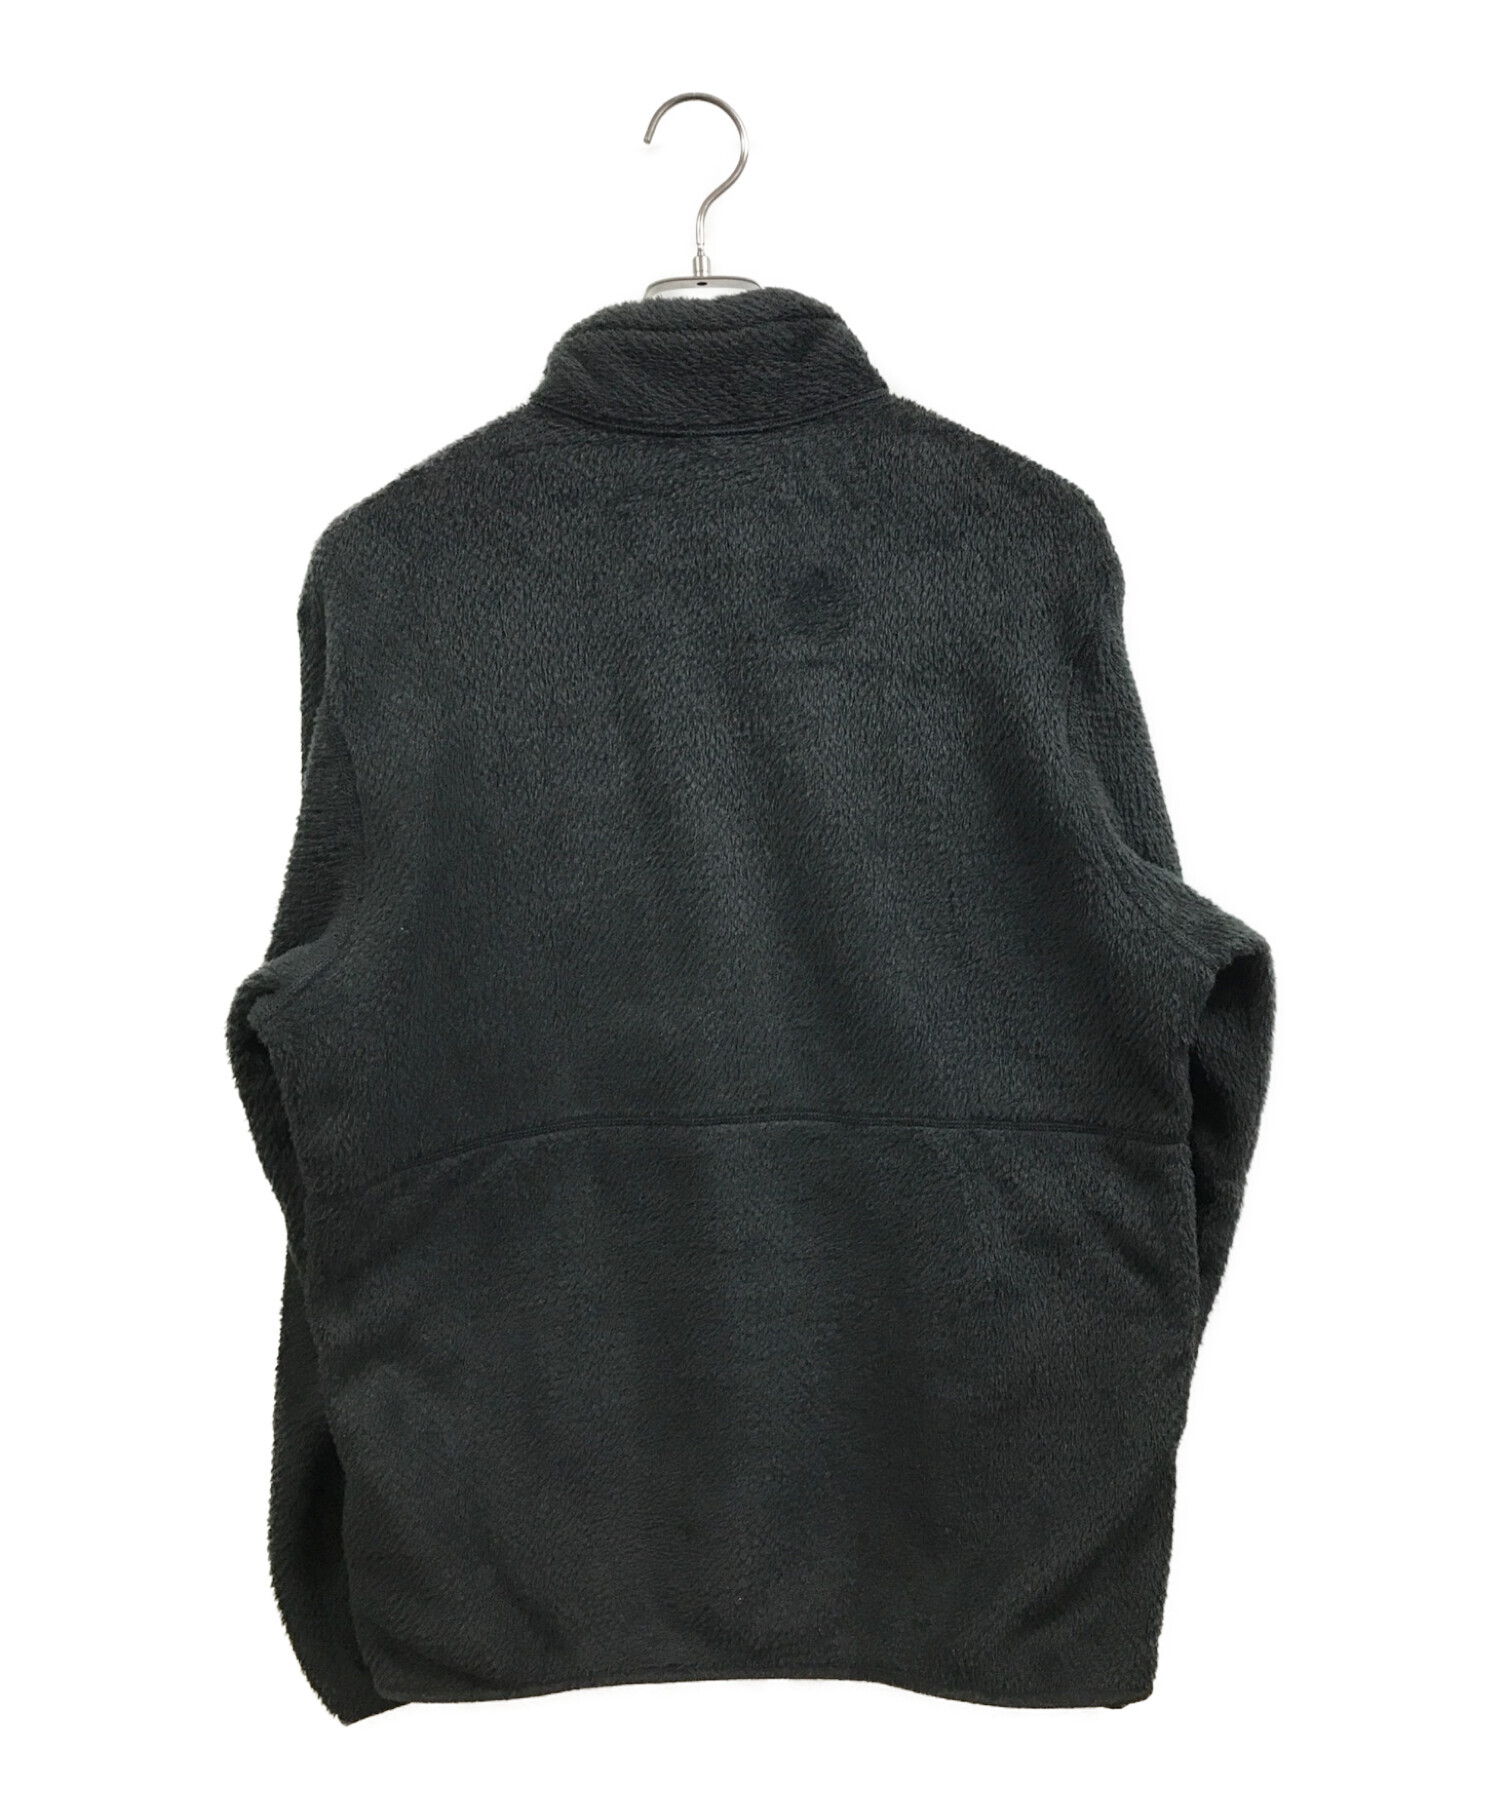 Patagonia (パタゴニア) リツールジャケット ブラック サイズ:M